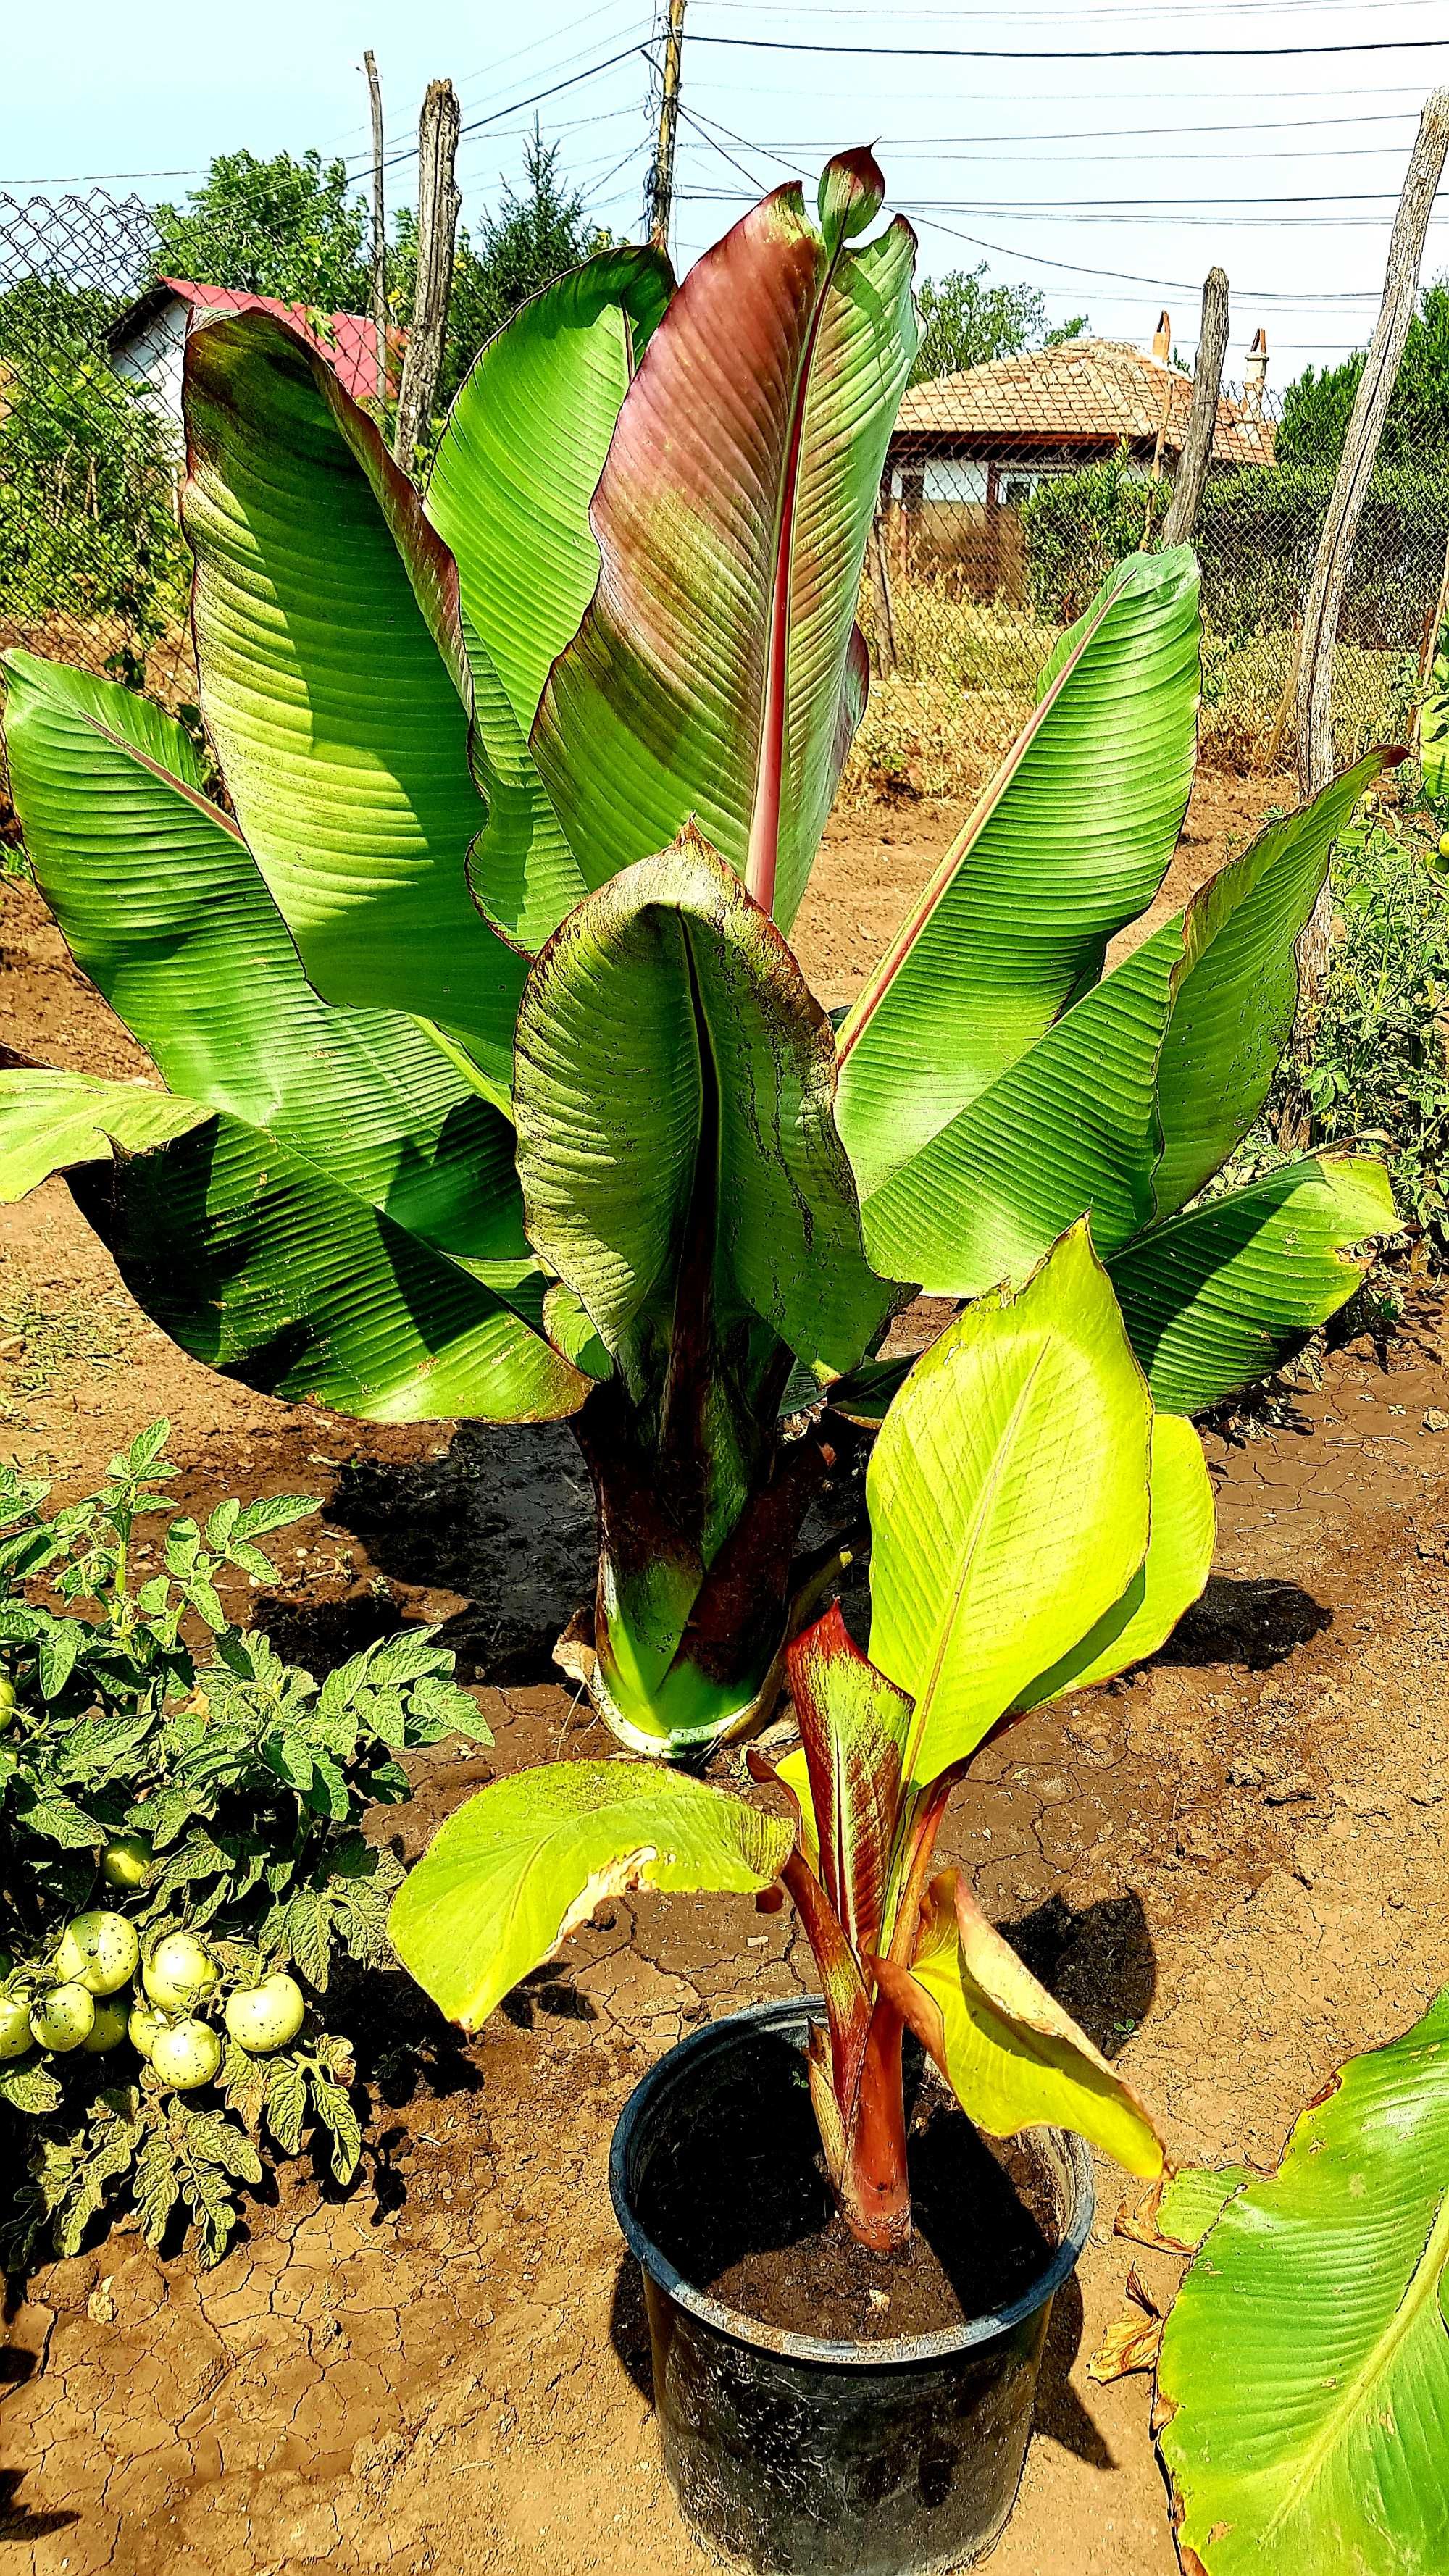 Bananier ce doar primavara-toamna rezistă plantat afară,apoi ghiveci